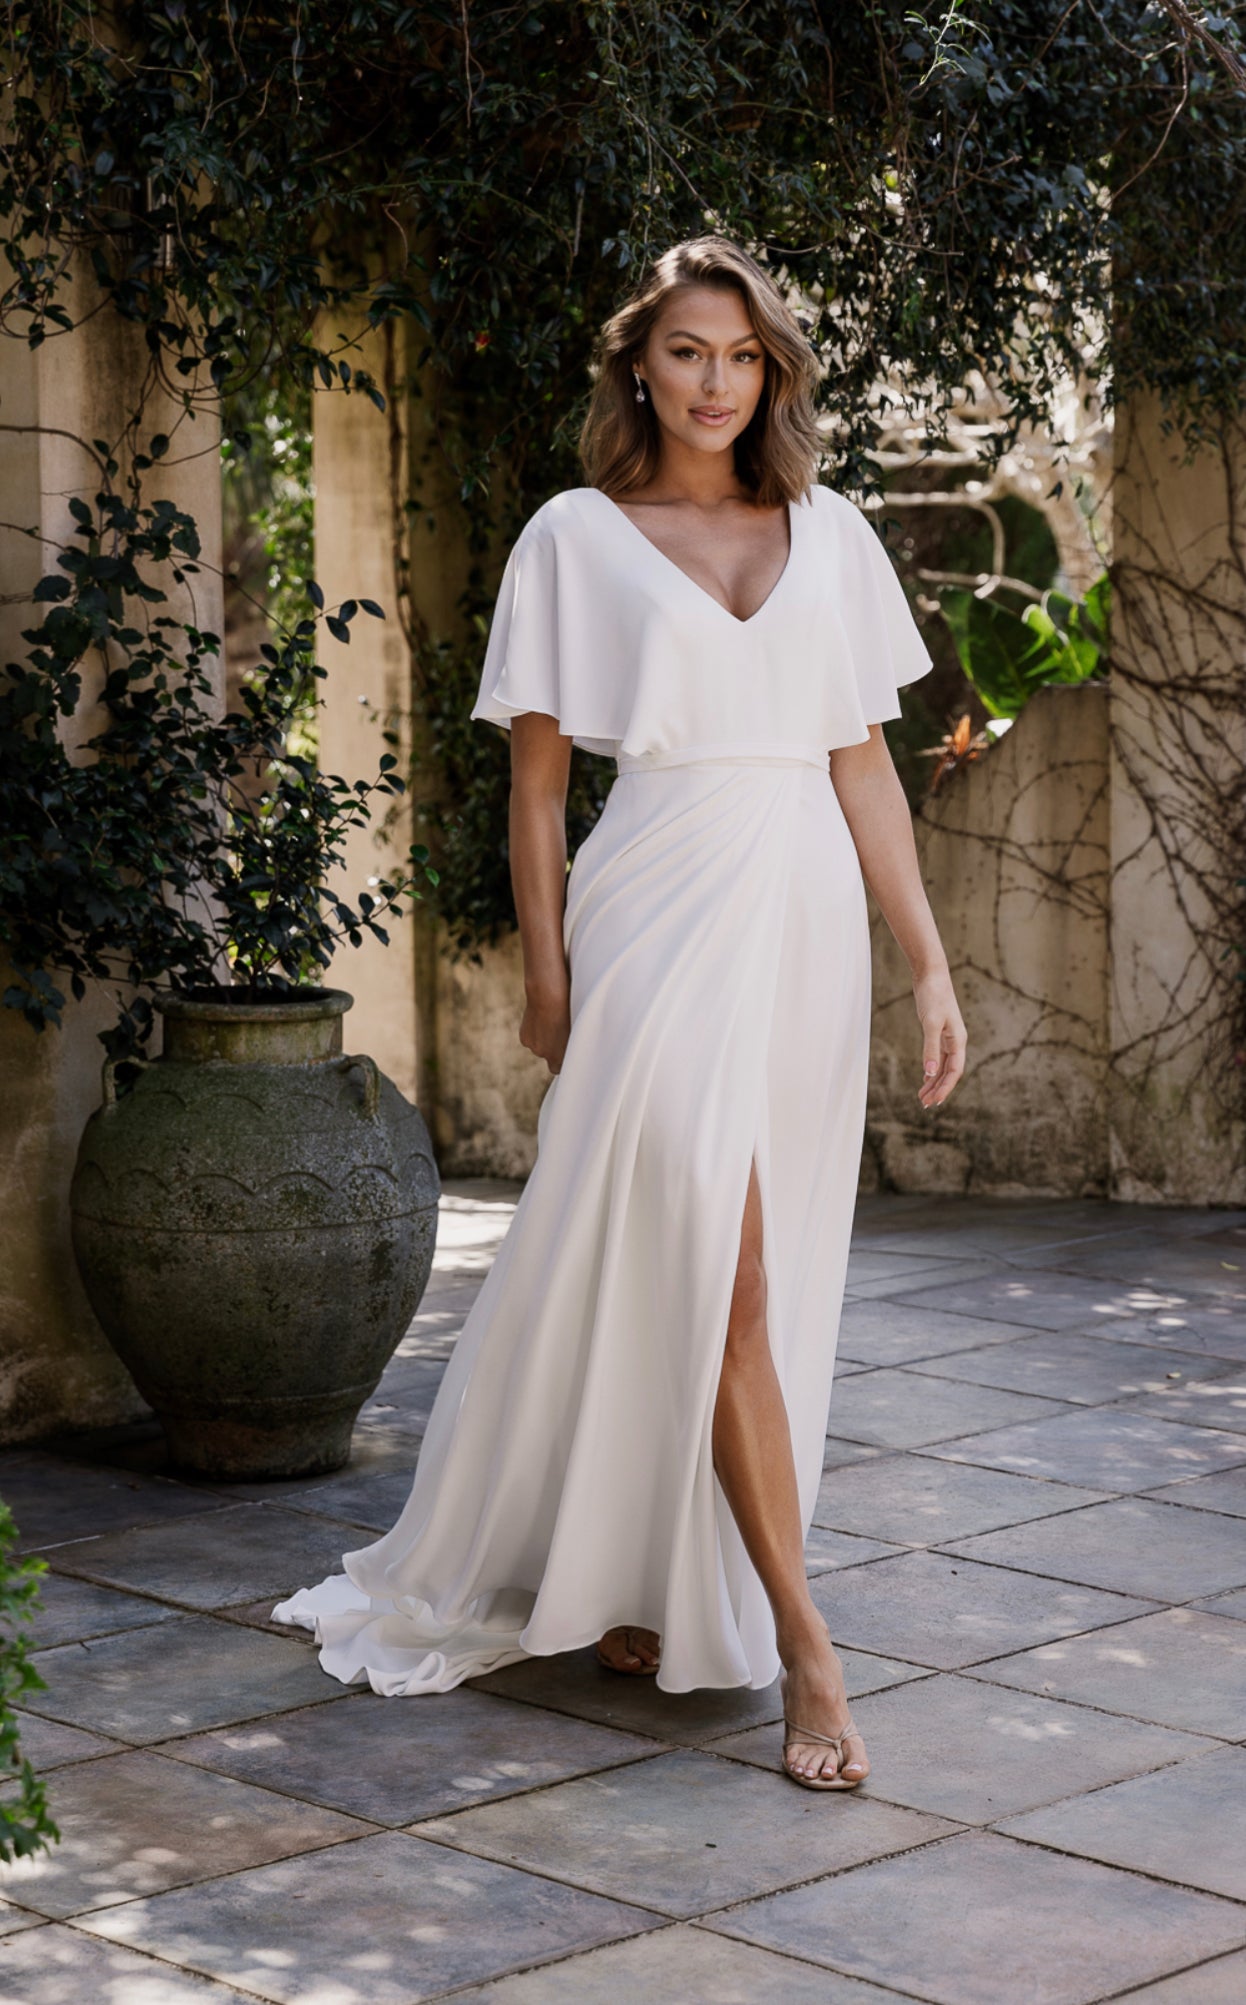 Maelle by Tania Olsen Vintage White Wedding Dress